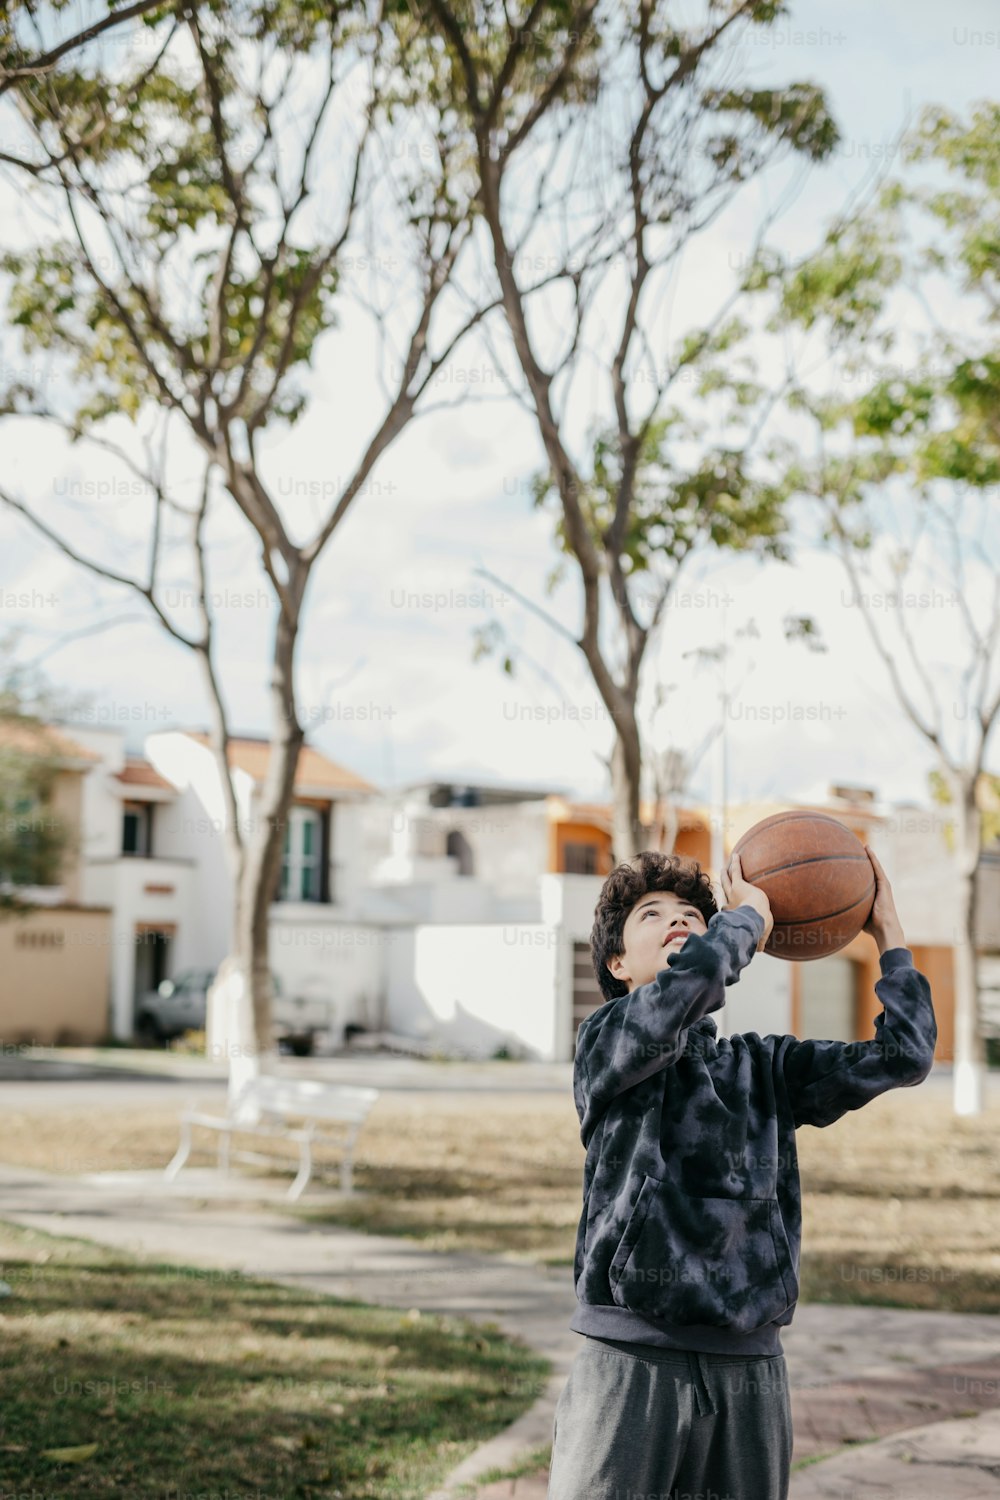 バスケットボールを顔にかざす少年